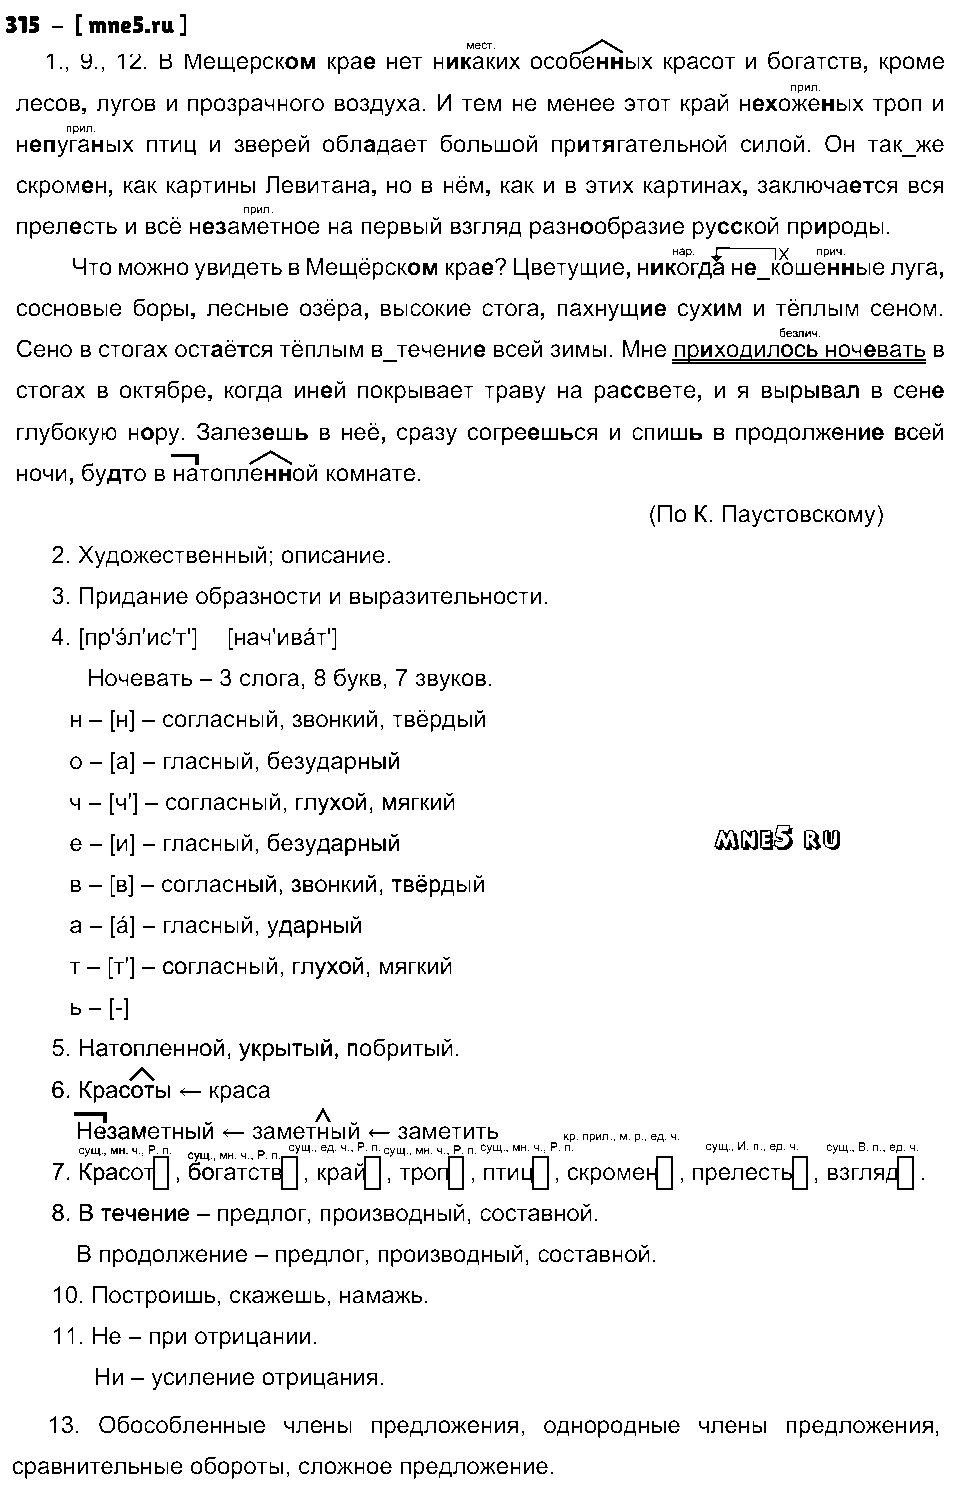 ГДЗ Русский язык 9 класс - 315